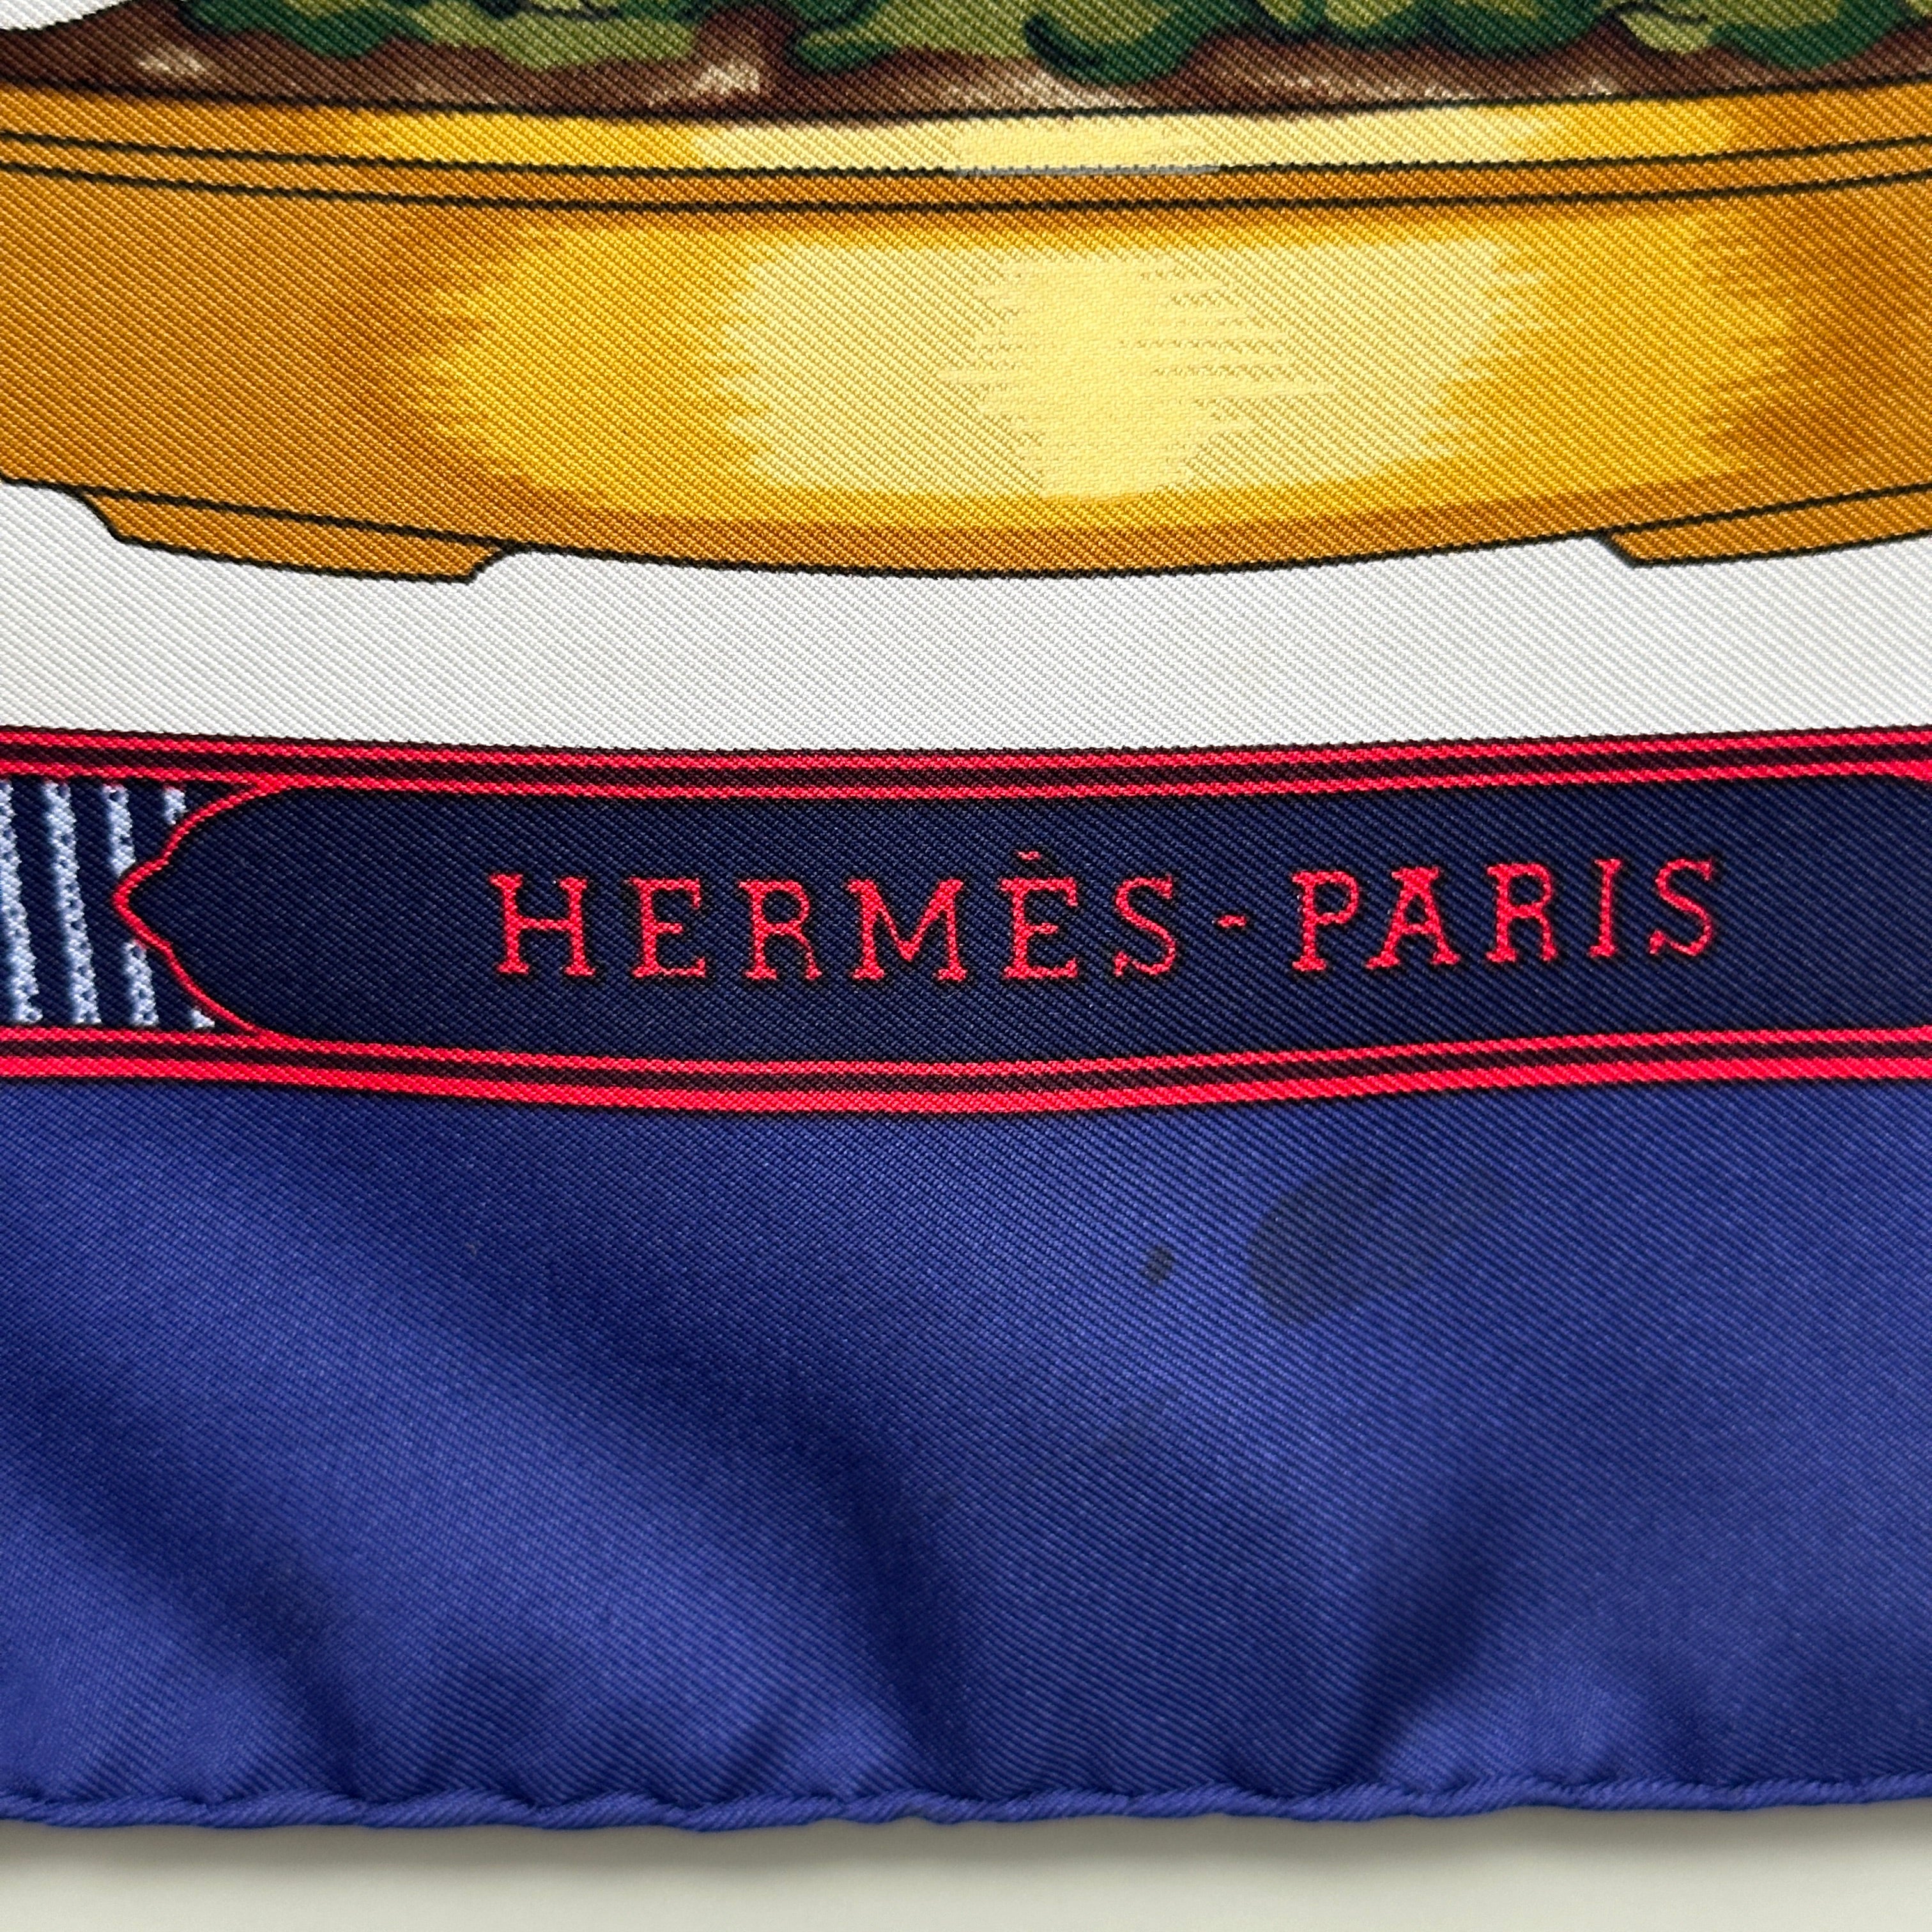 hermes-paris-signature